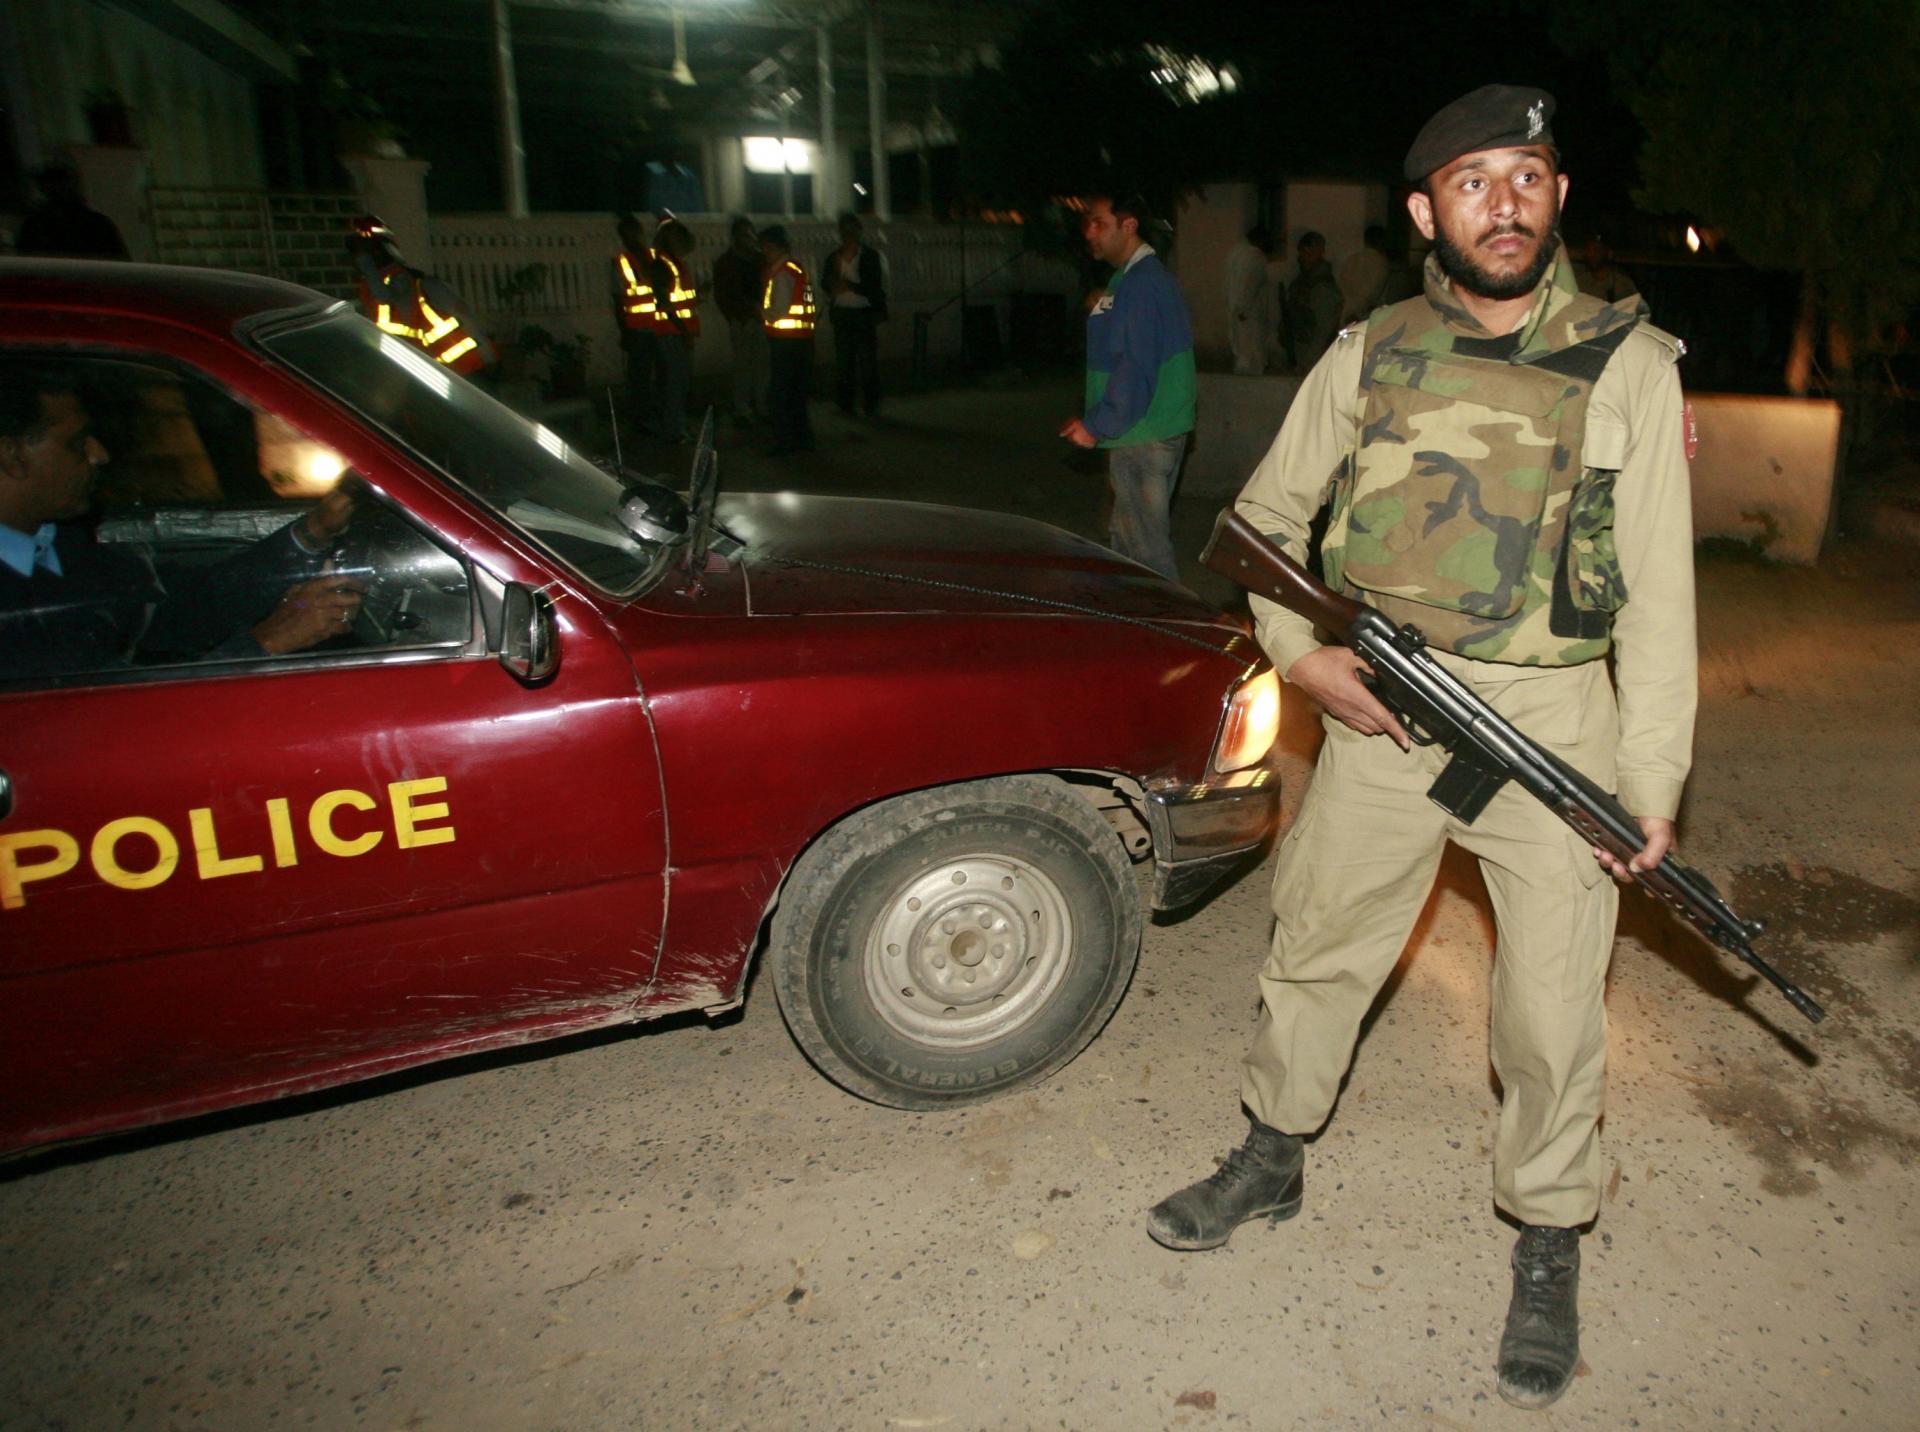 اسلام آبادده پولیس گه قره ته قوراللی هجوم اویوشتیریلدی